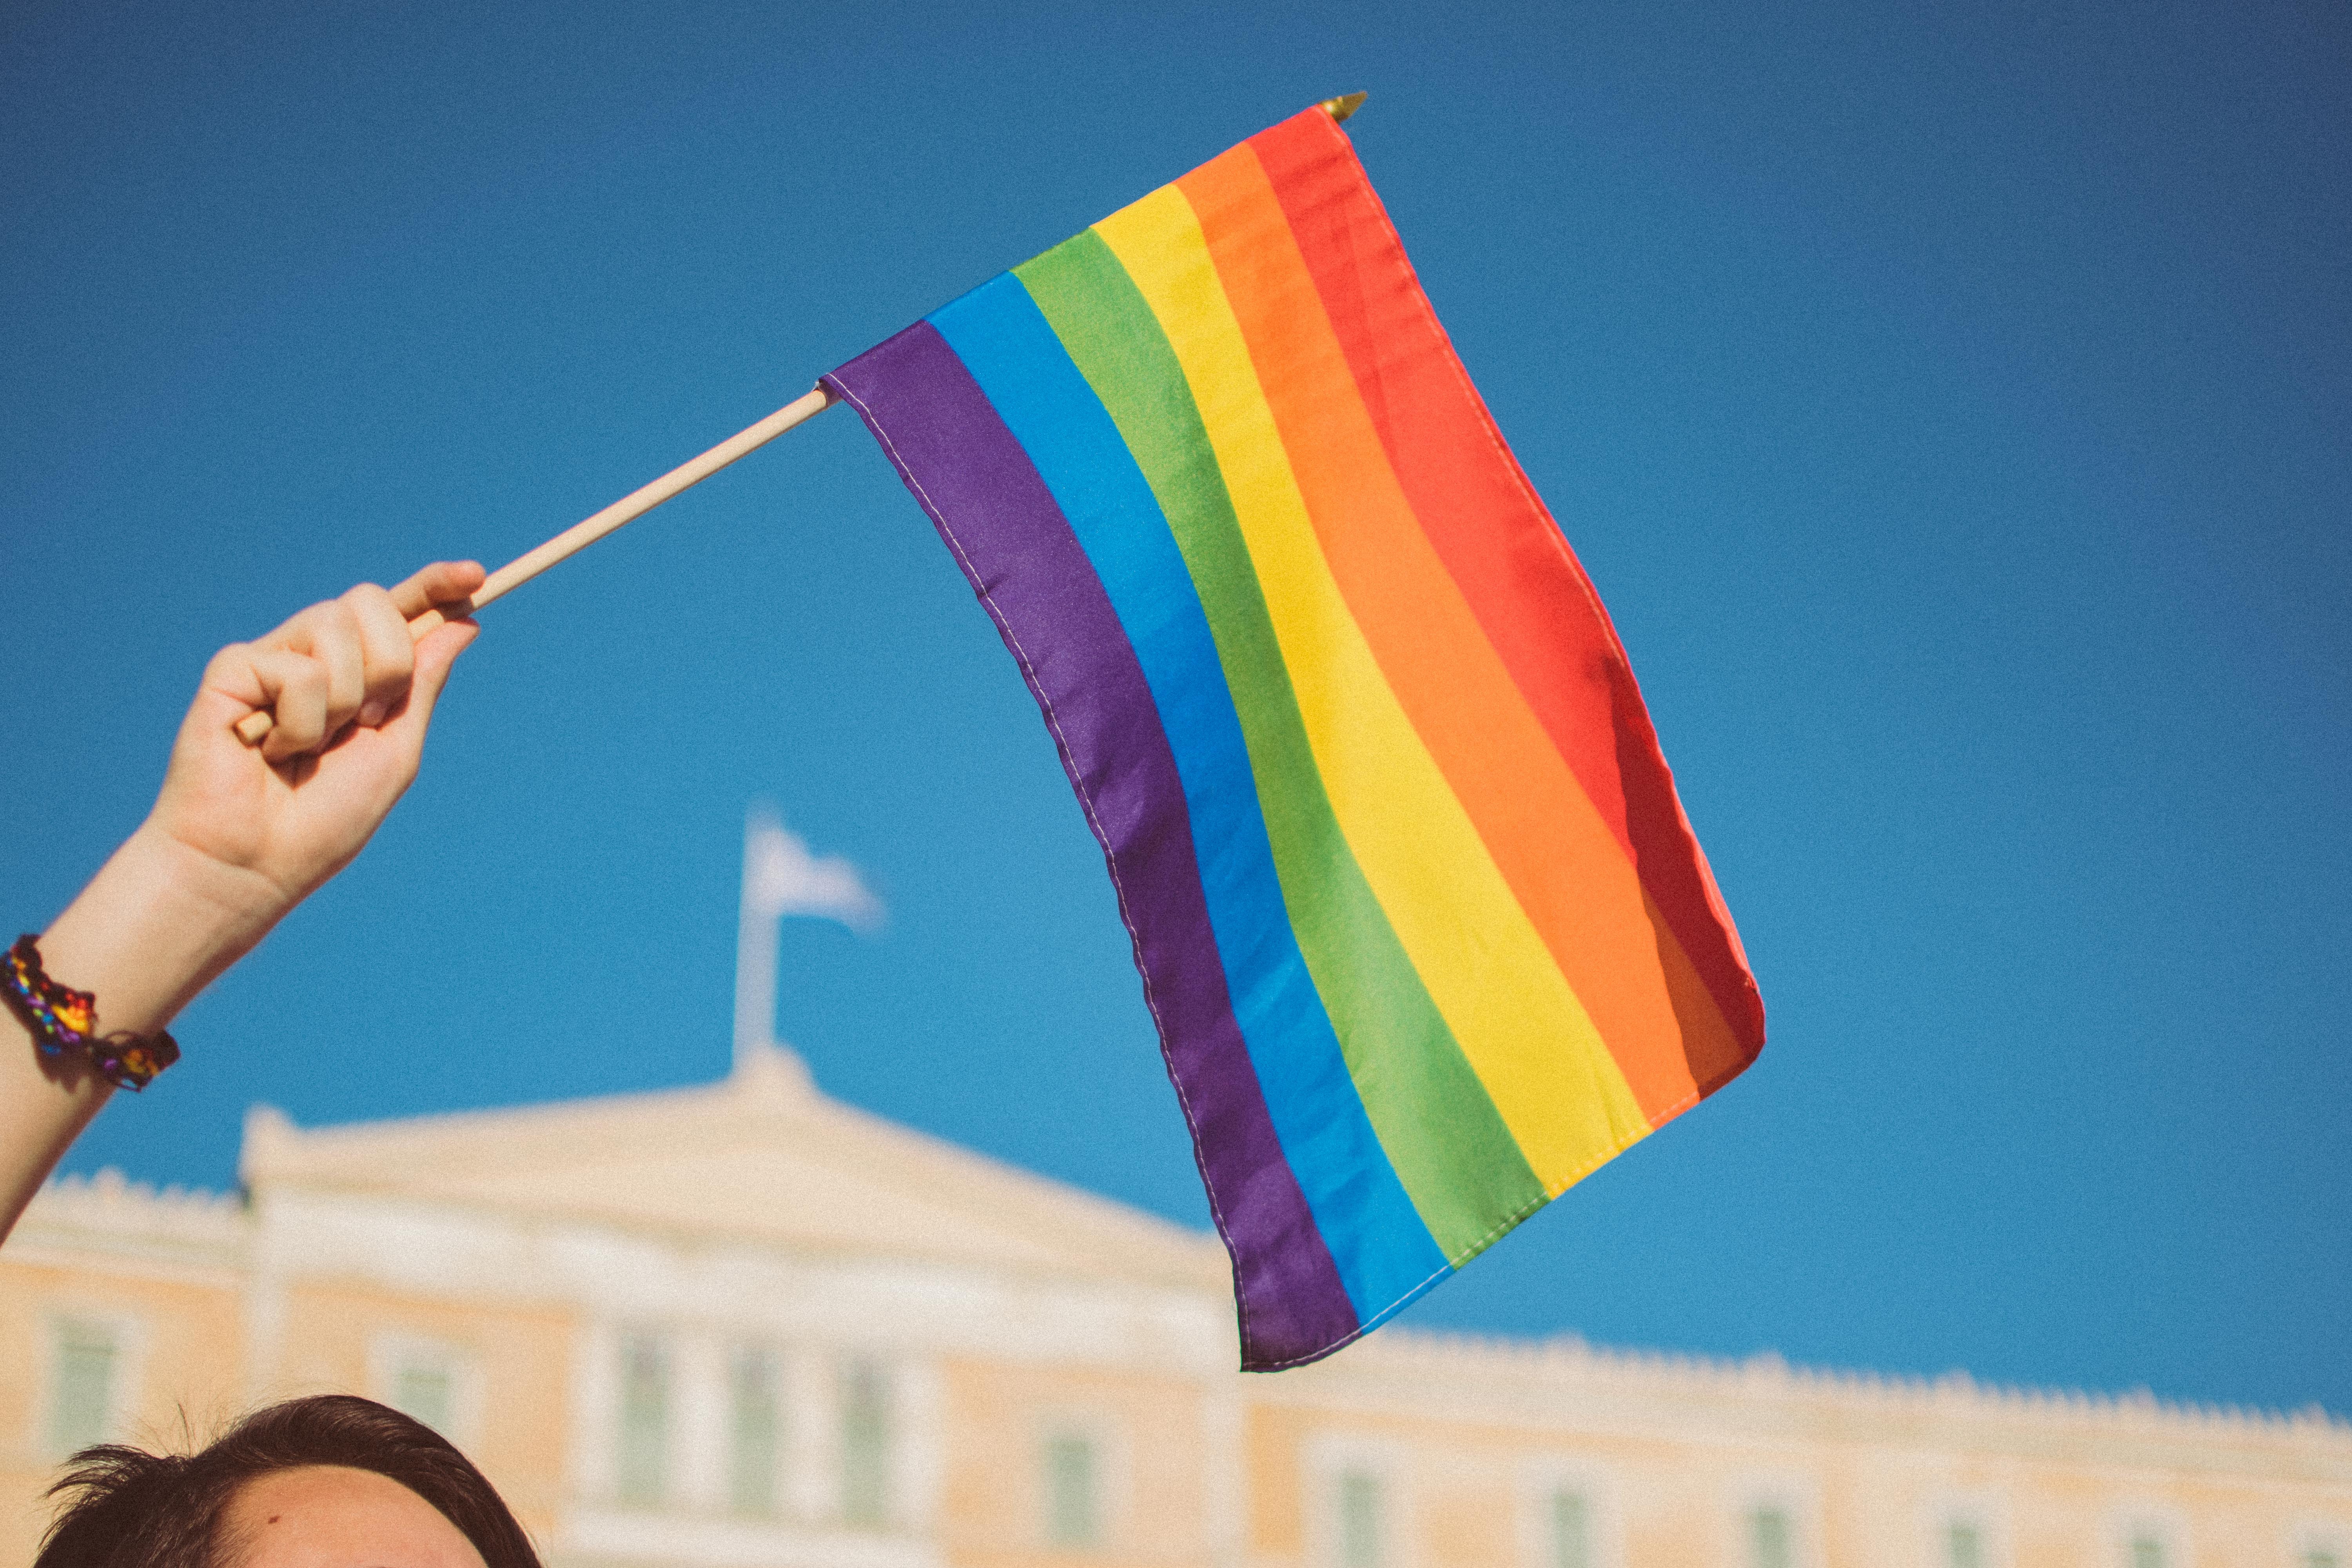 “Erotização precoce”: Prefeitura de Natal faz evento sobre crianças e adolescentes LGBTQI+